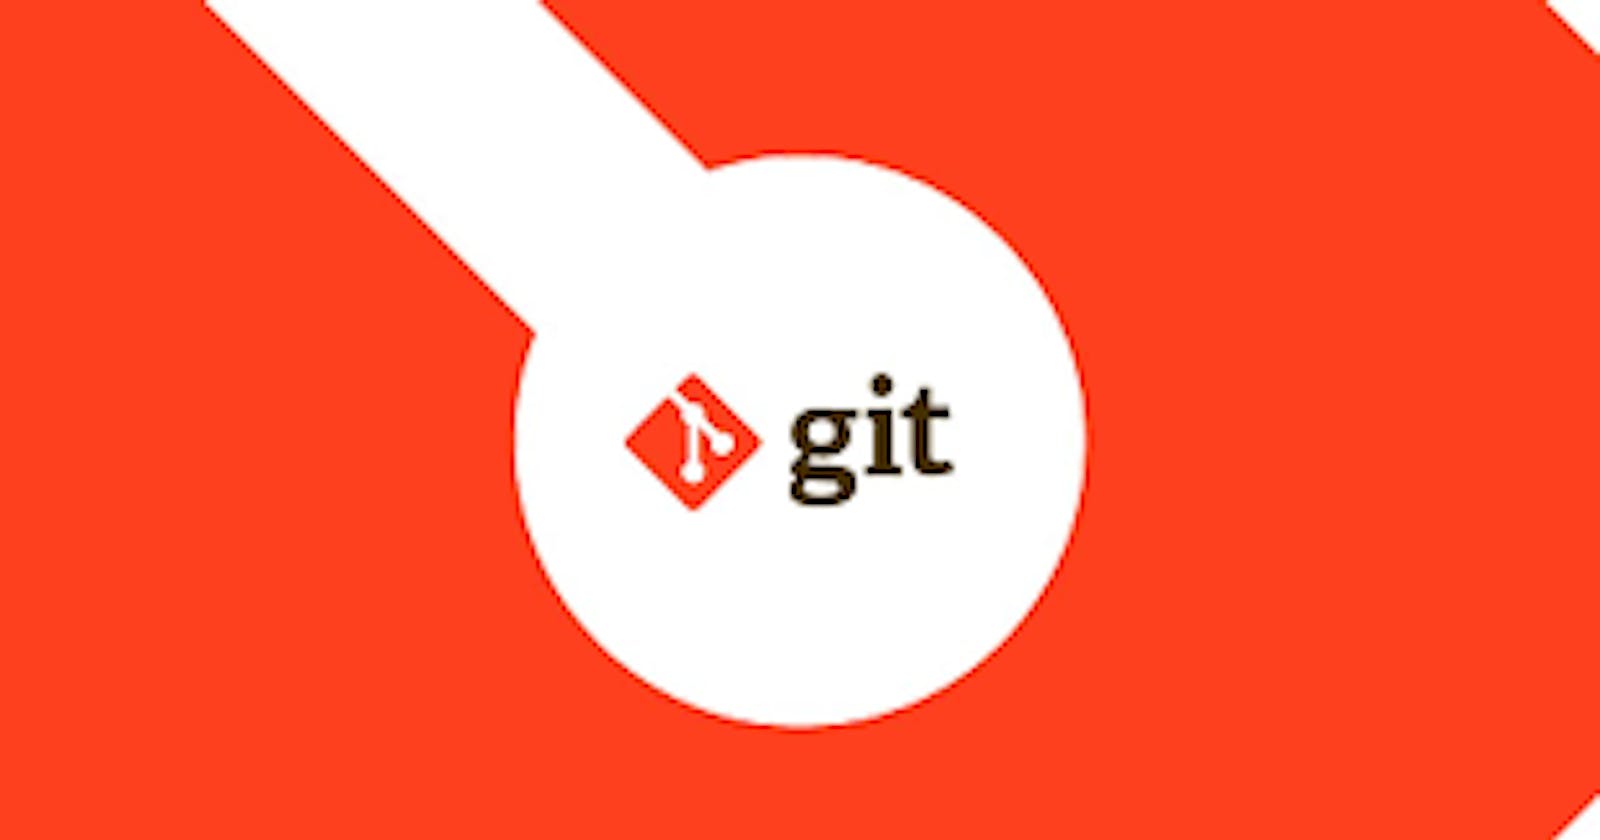 How to Learn Git for DevOps: A Beginner's Git Roadmap